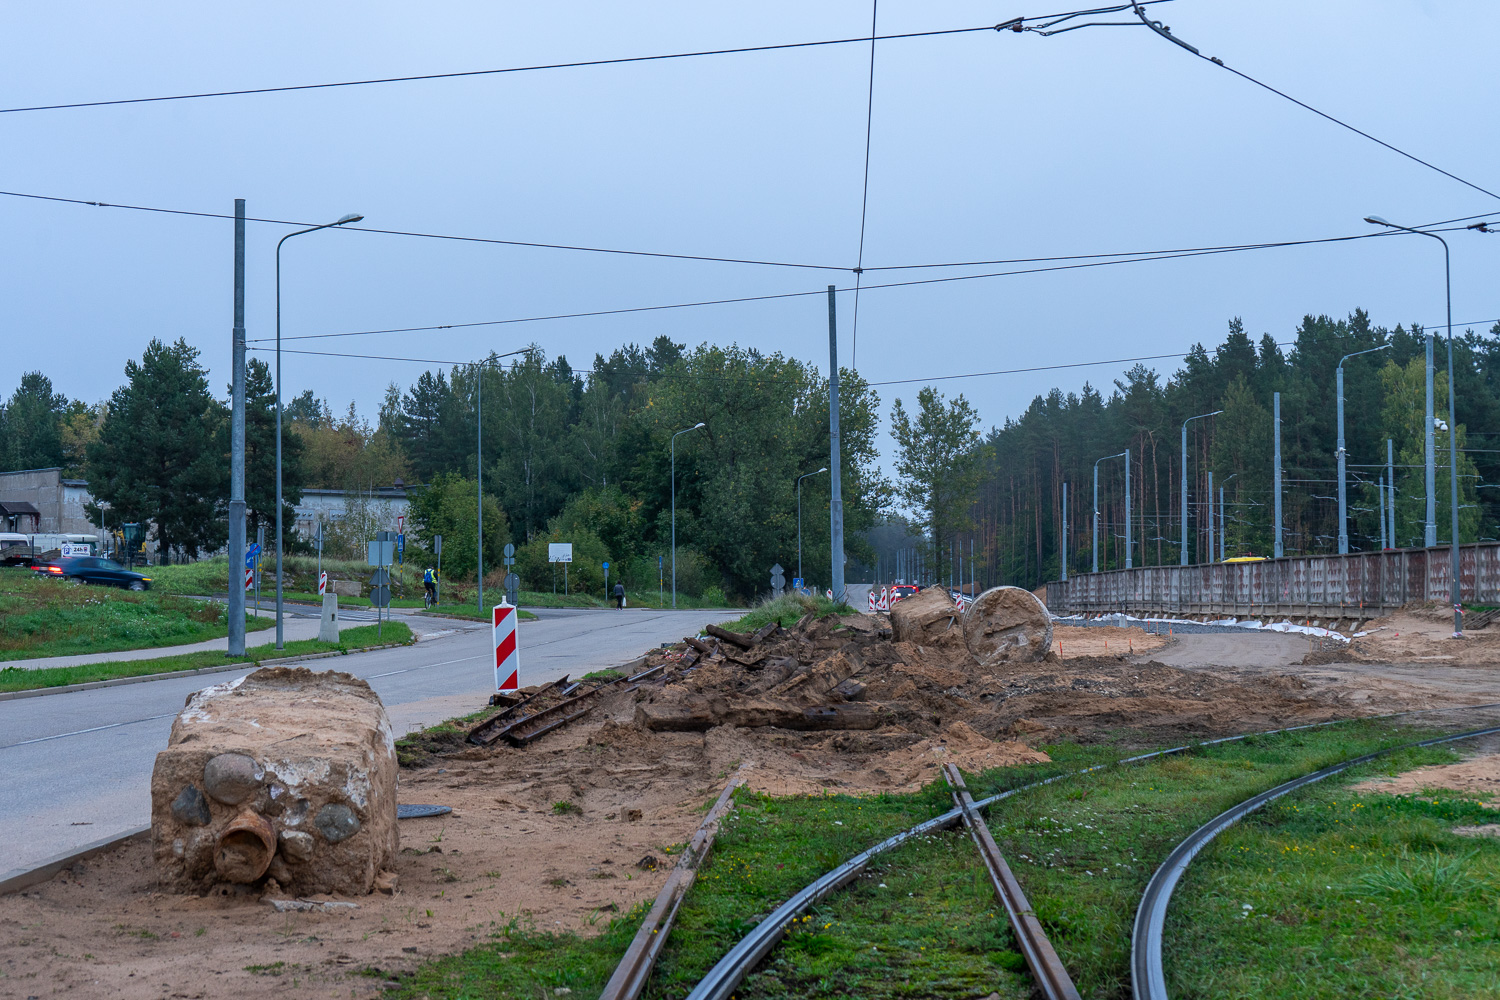 Väinalinn — Construction of new tram line Ķīmija — Stropi; Väinalinn — Reconstruction of track on Jātnieku str.